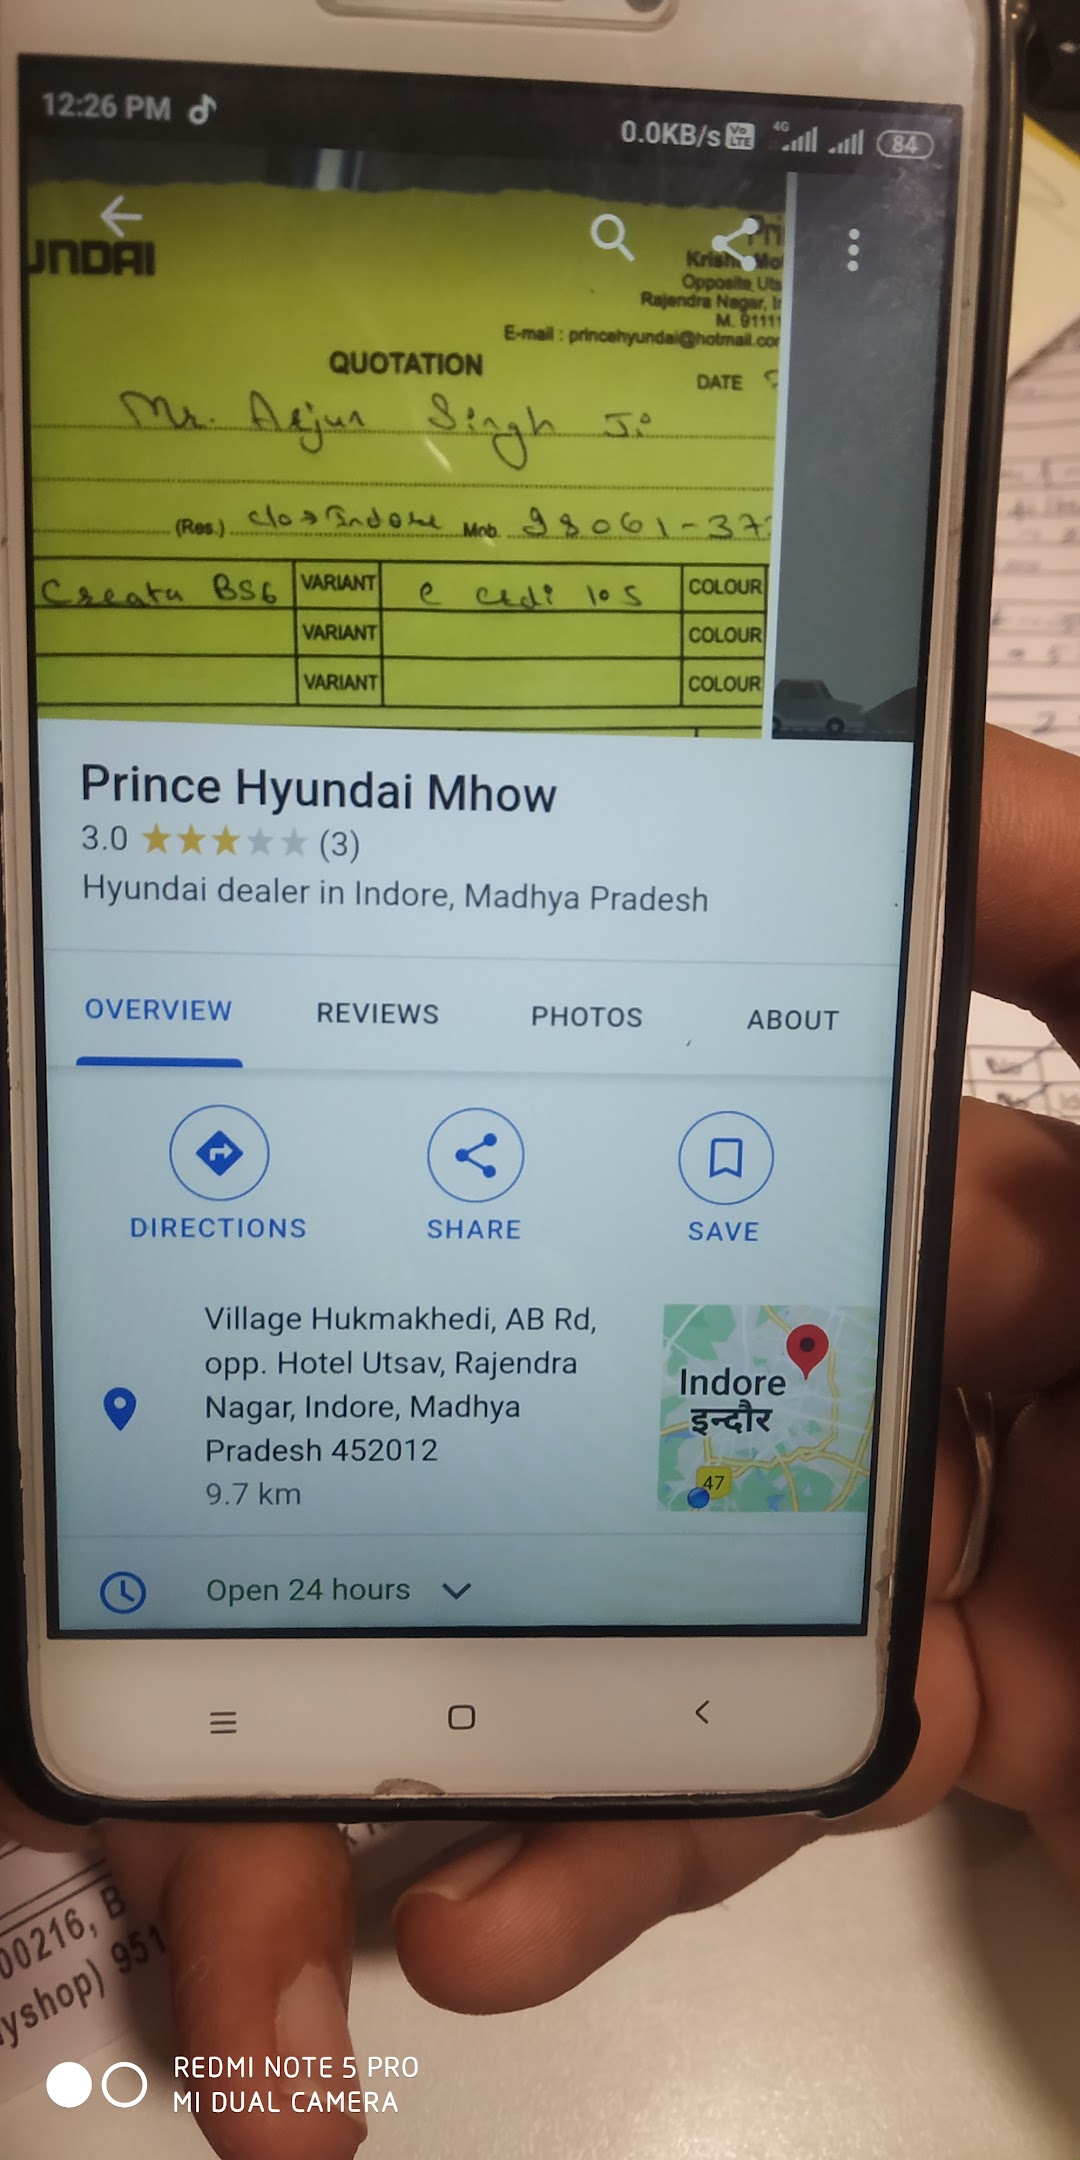 Prince Hyundai Mhow